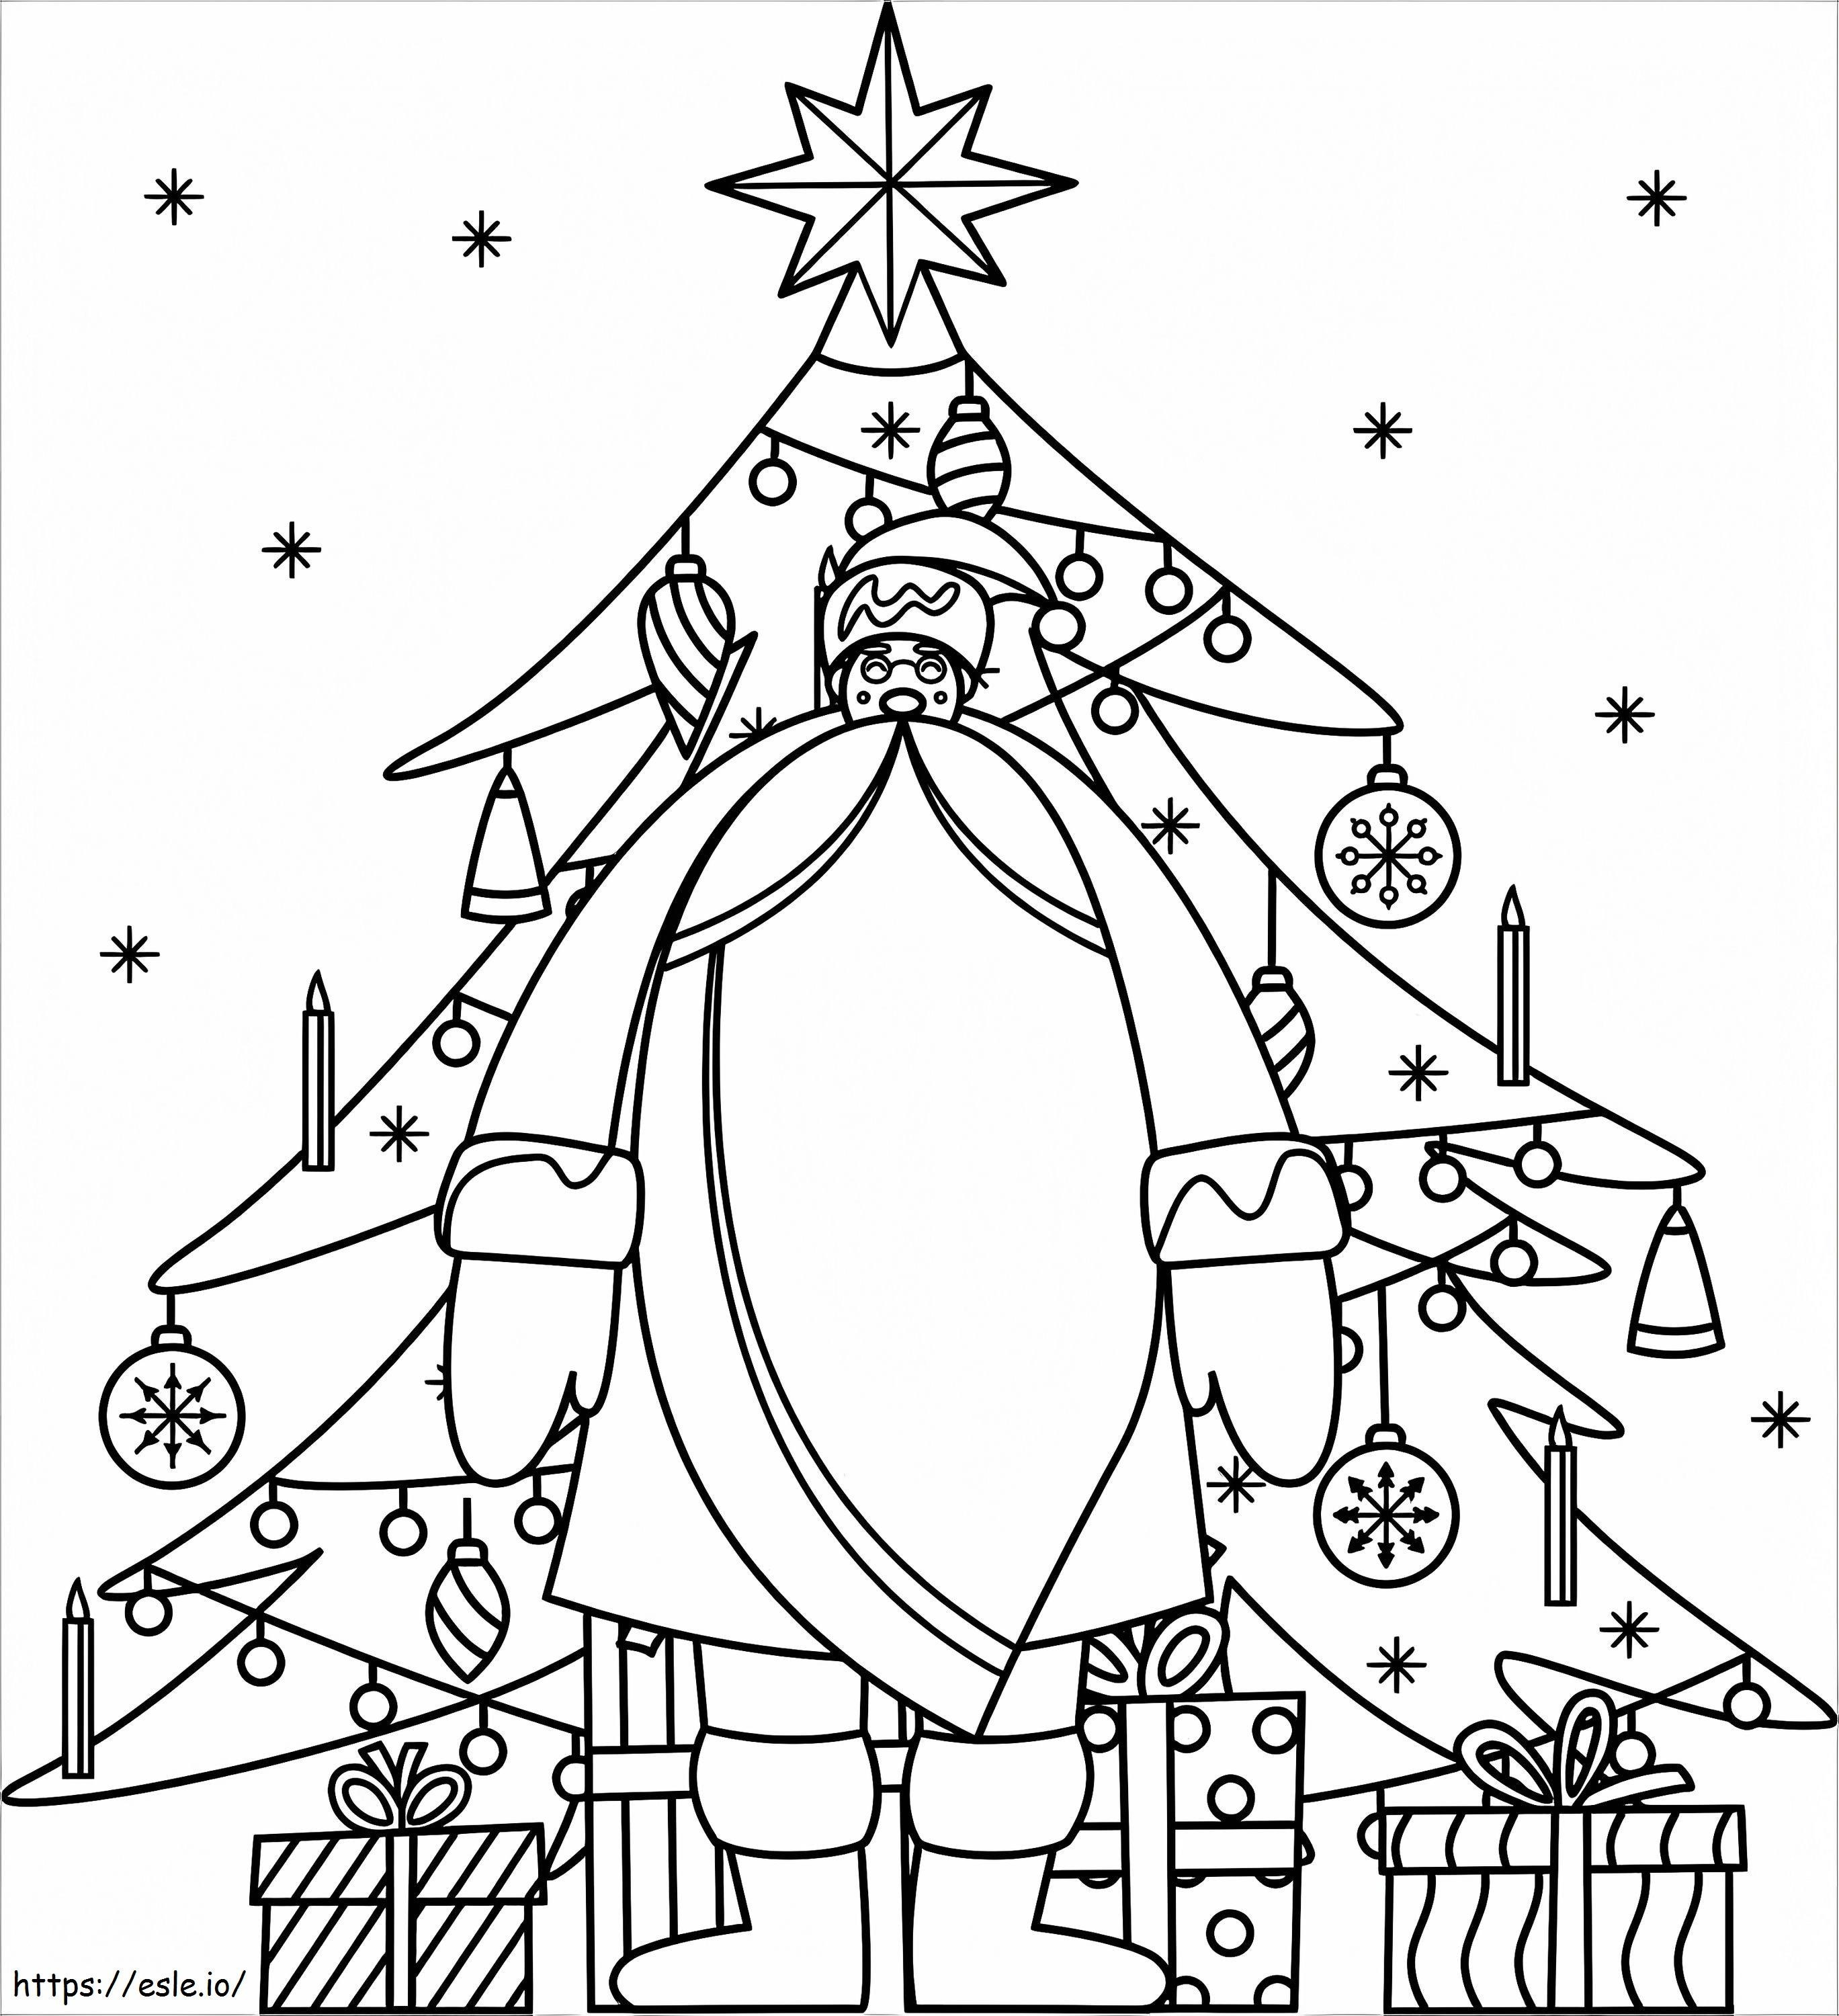 Santa Claus 13 coloring page